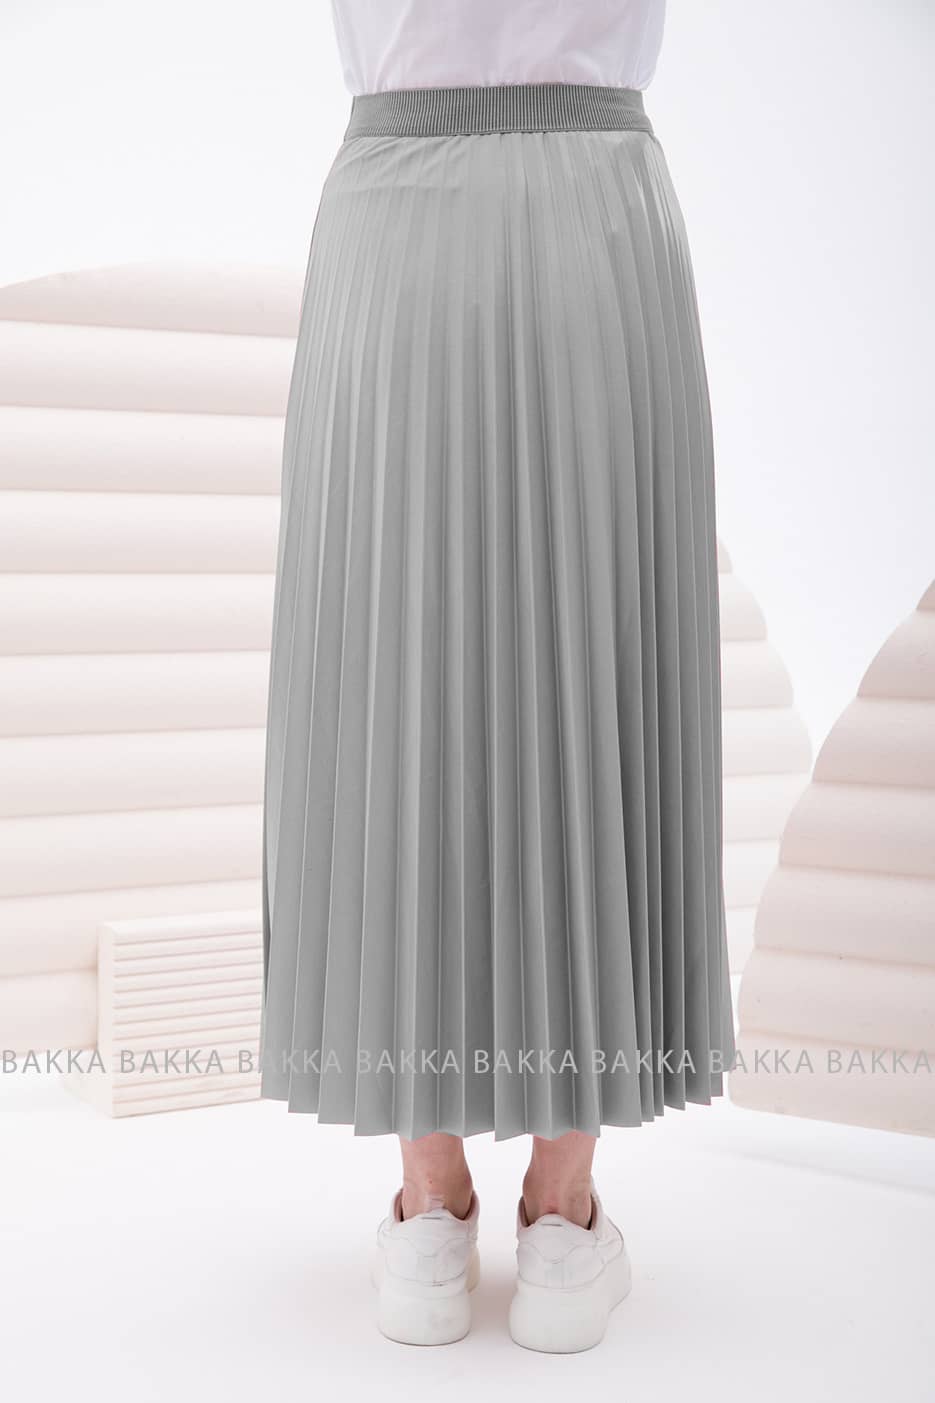 Skirt - 2170 - Gray - bakkaclothing